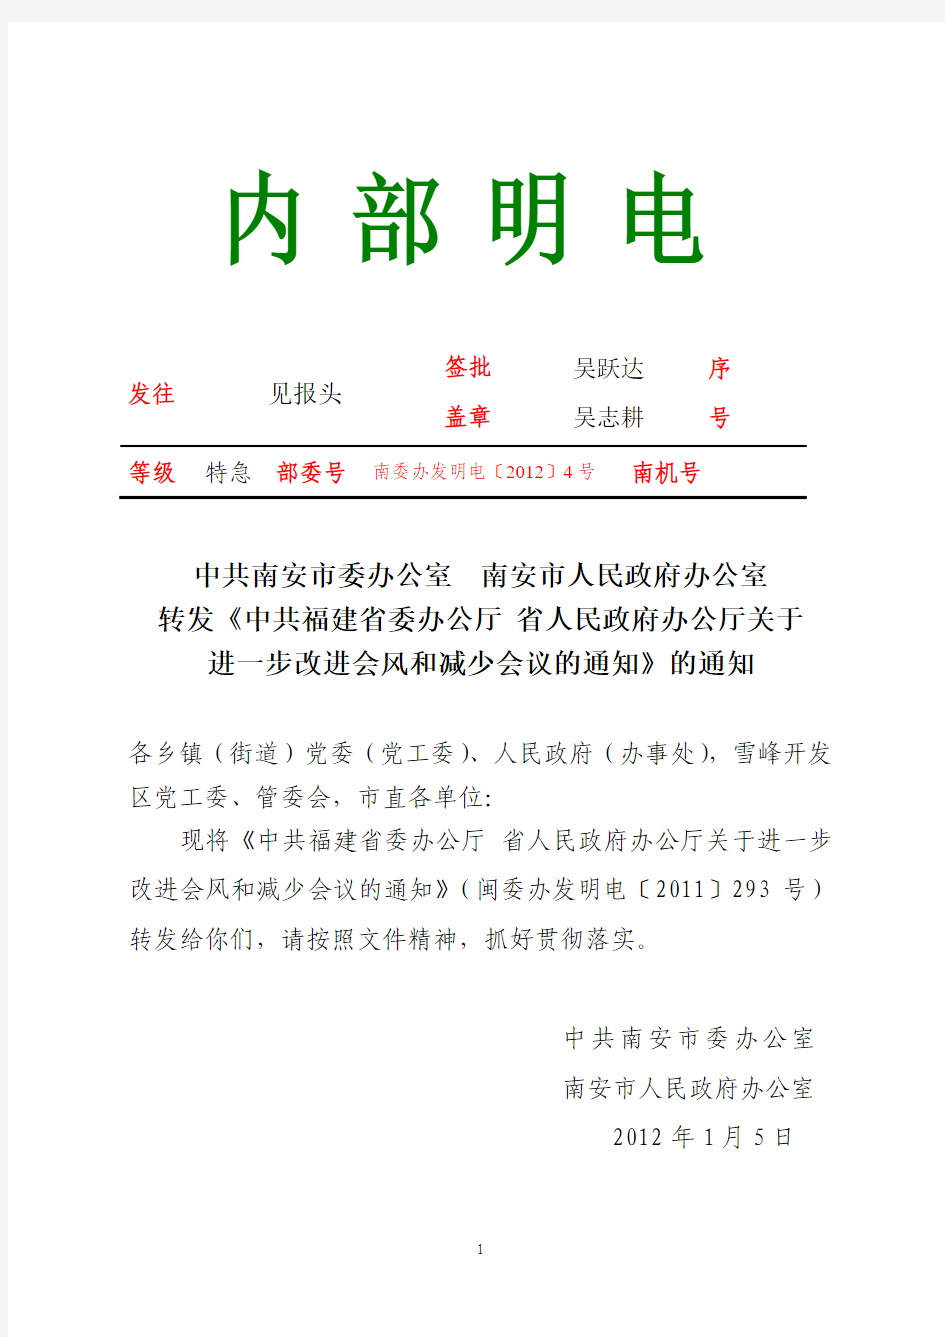 20120106 转发《中共福建省委办公厅 省人民政府办公厅关于进一步改进会风和减少会议的通知》的通知